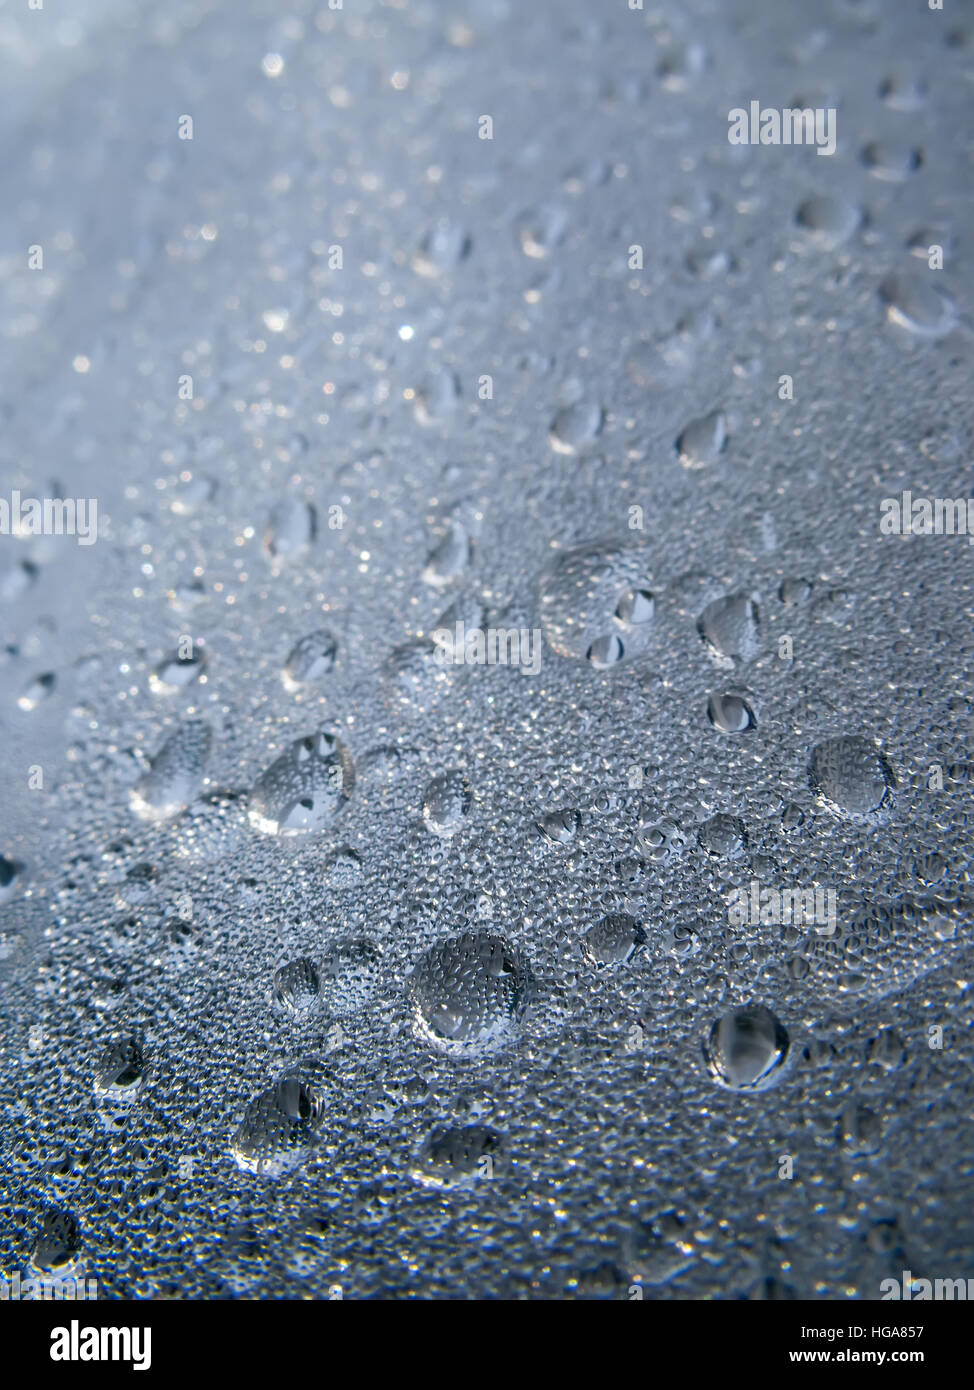 La texture de fond de gouttes d'eau et les gouttelettes sur une surface en verre avec couvercle Banque D'Images